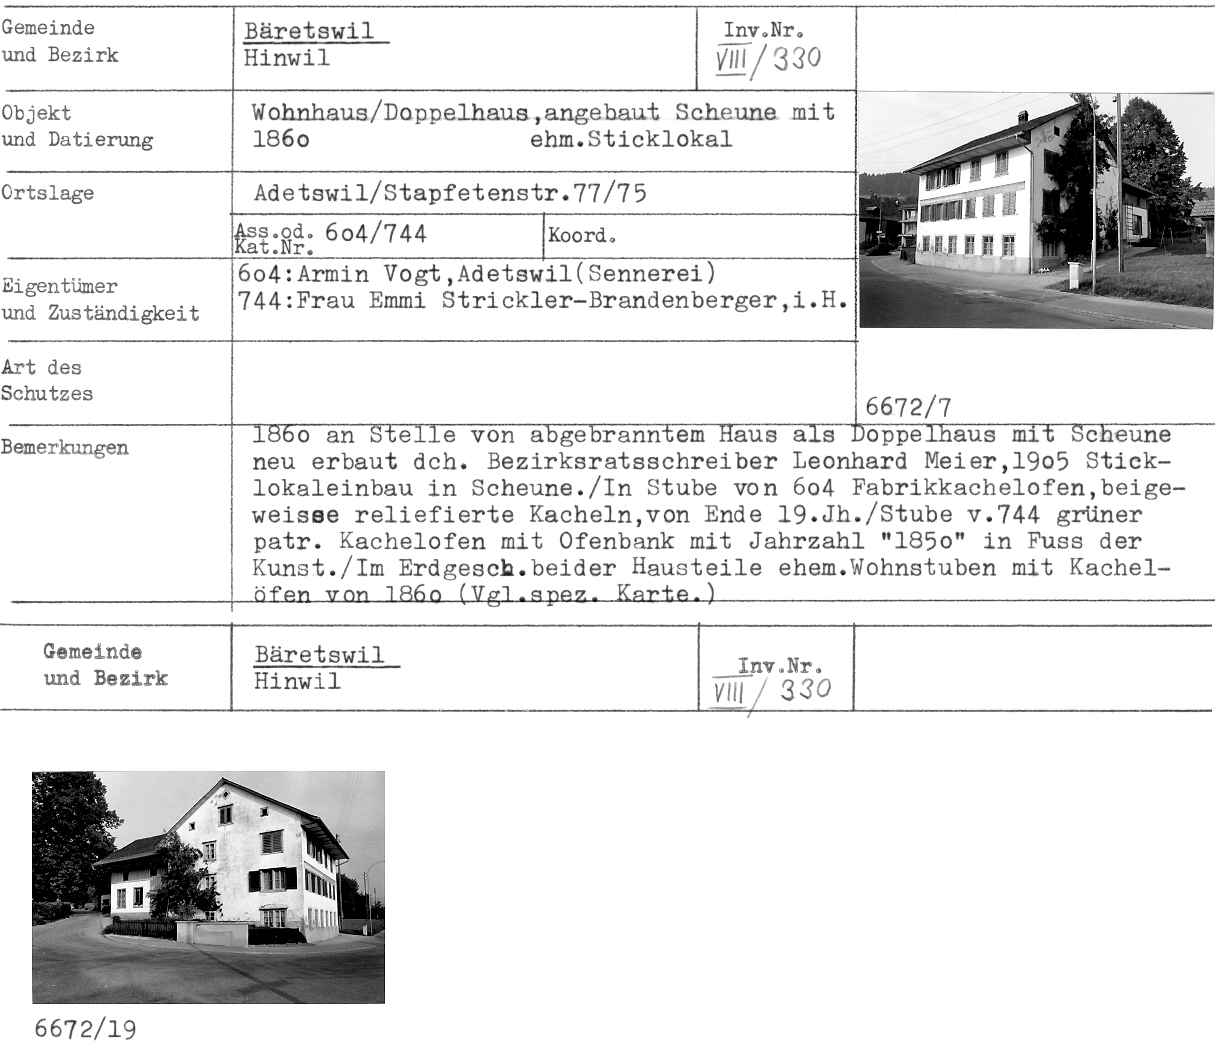 Wohnhaus/Doppelhaus, angebaut Scheune mit ehem. Sticklokal, 1860, Adetswil, Stapfetenstrasse 75/77